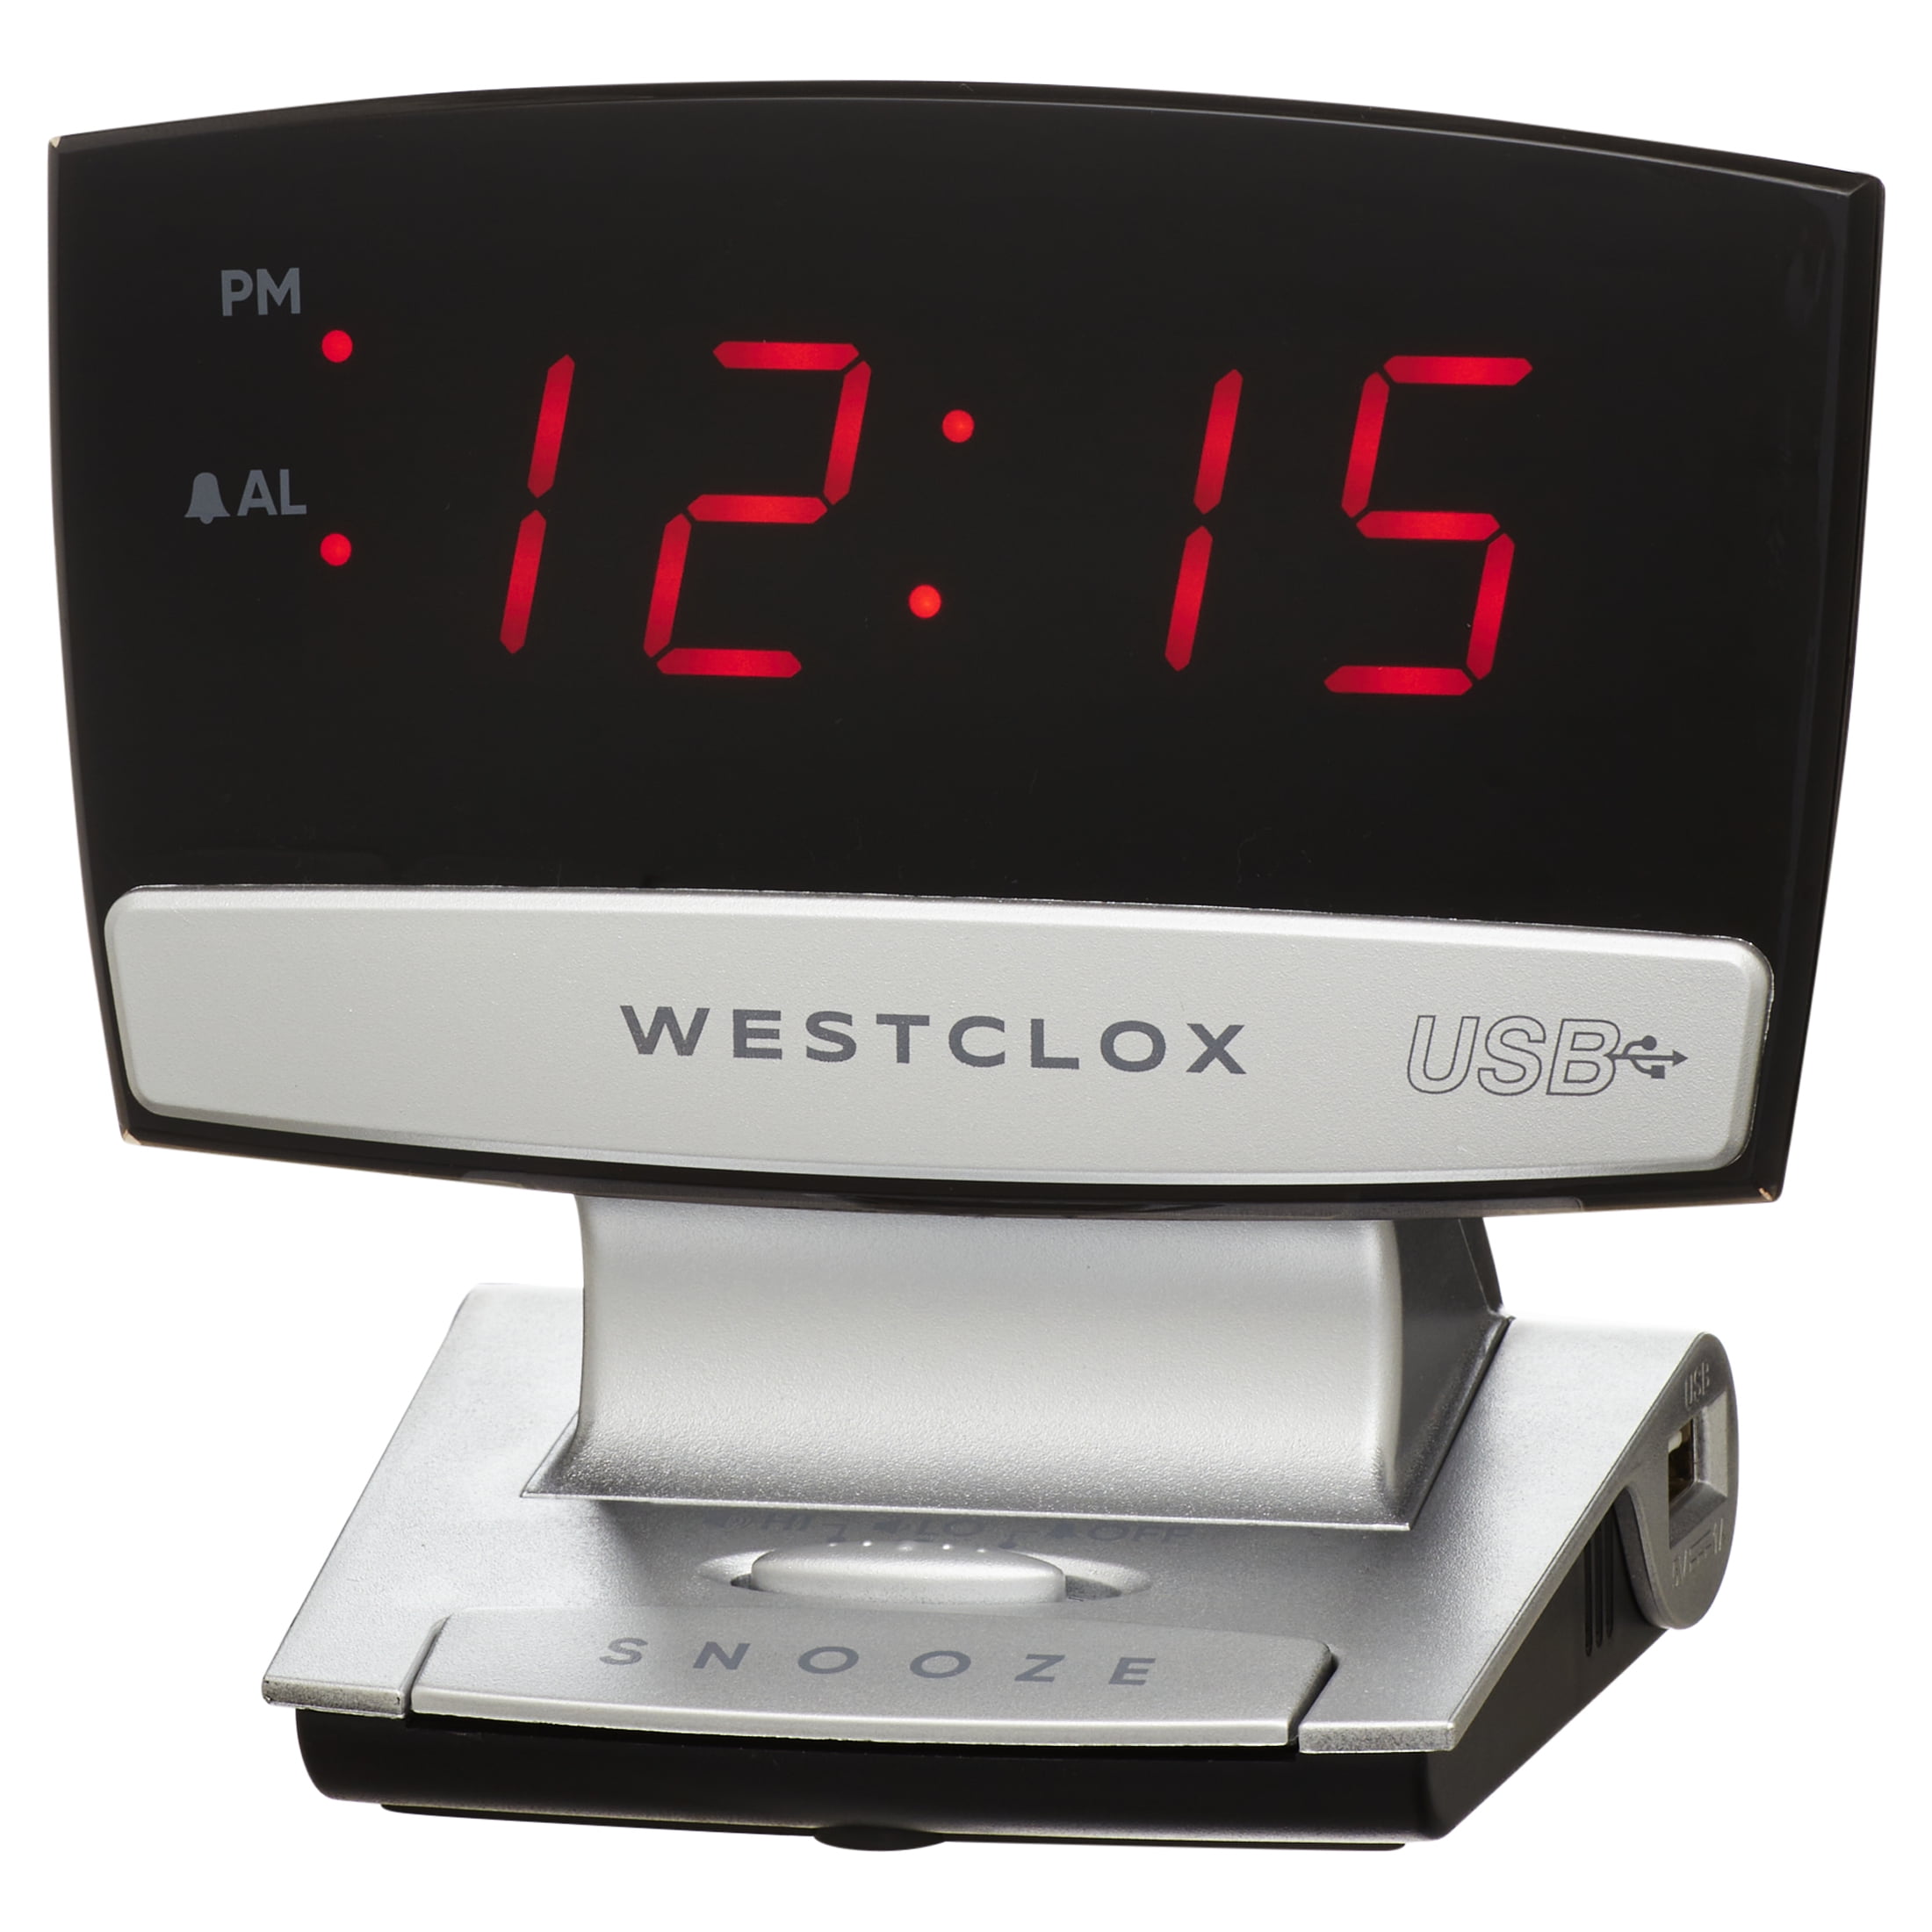 Walmart YMMV: Westclox Digital Alarm Clock with 1A USB Charging Port $3.42 + Free Ship with Walmart+